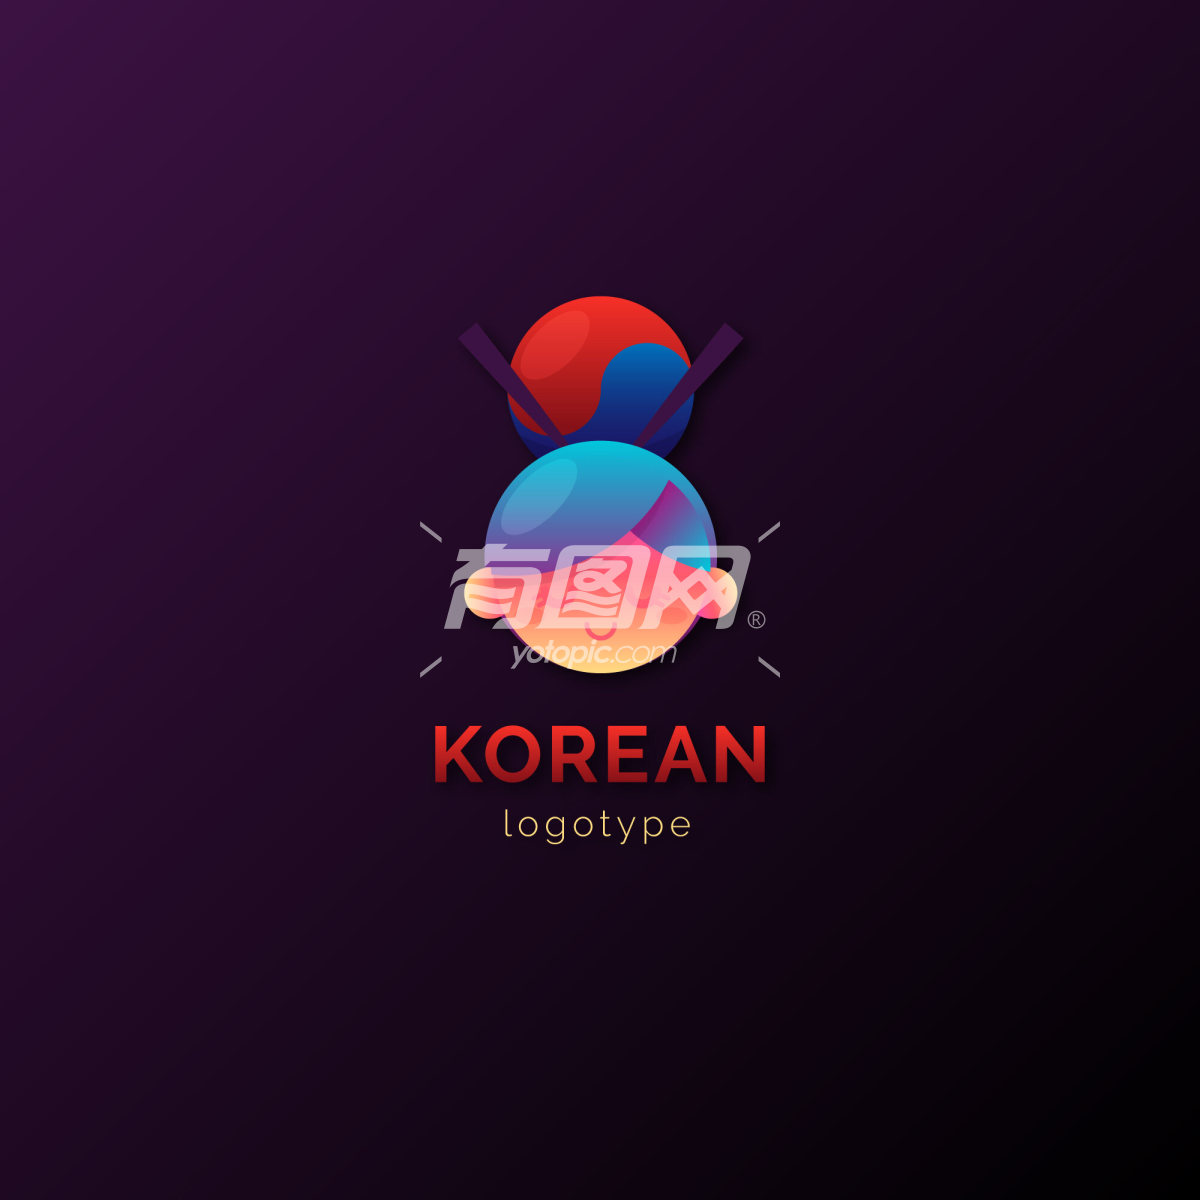 韩国风格logo设计